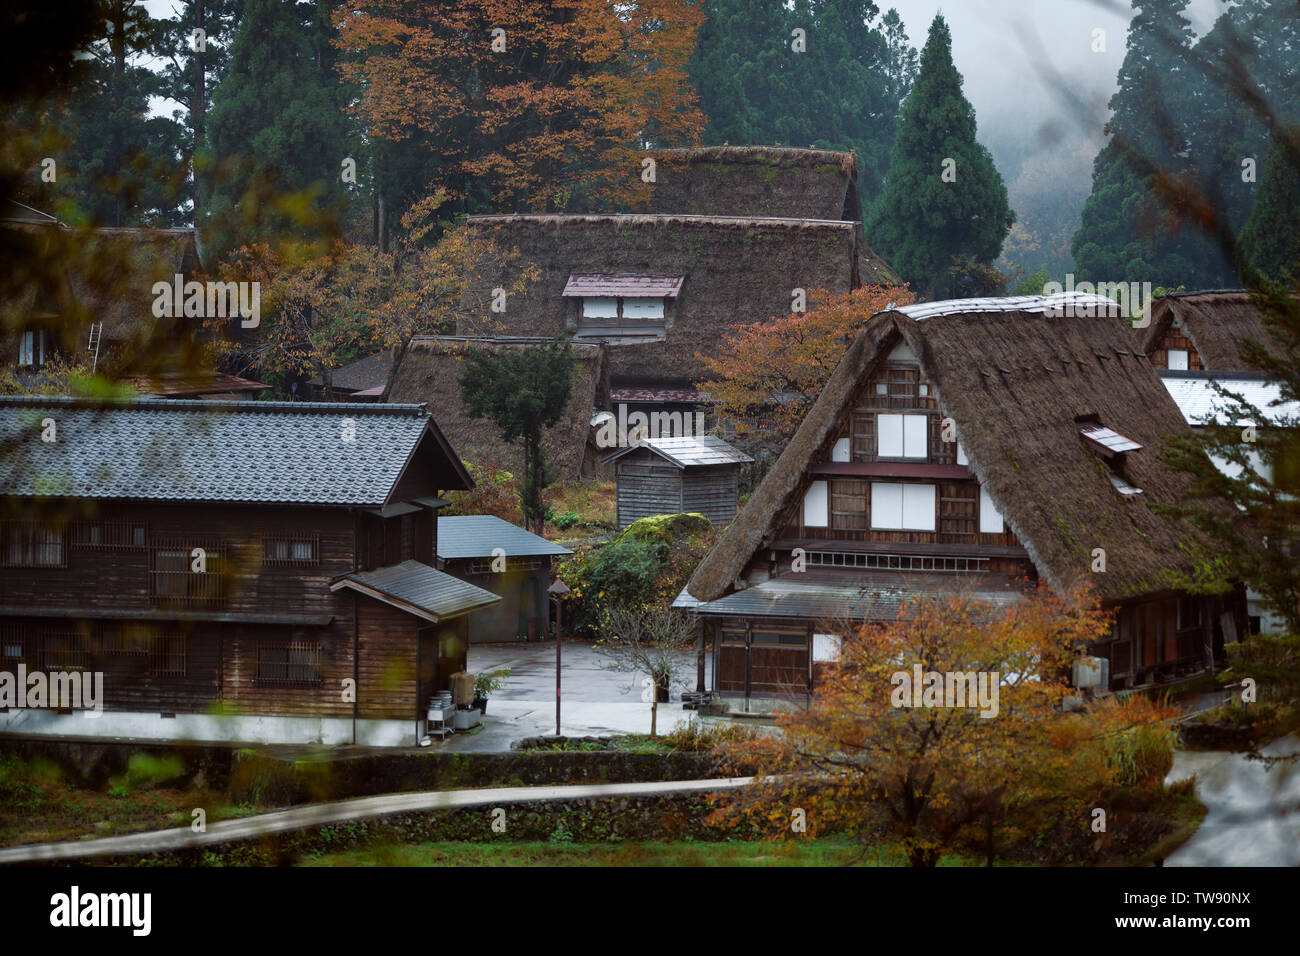 Lizenz und Drucke bei MaximImages.com - Ainokura, japanisches Dorf mit Gassho zukiri traditionellen ländlichen Häusern. Toyama, Japan. Stockfoto